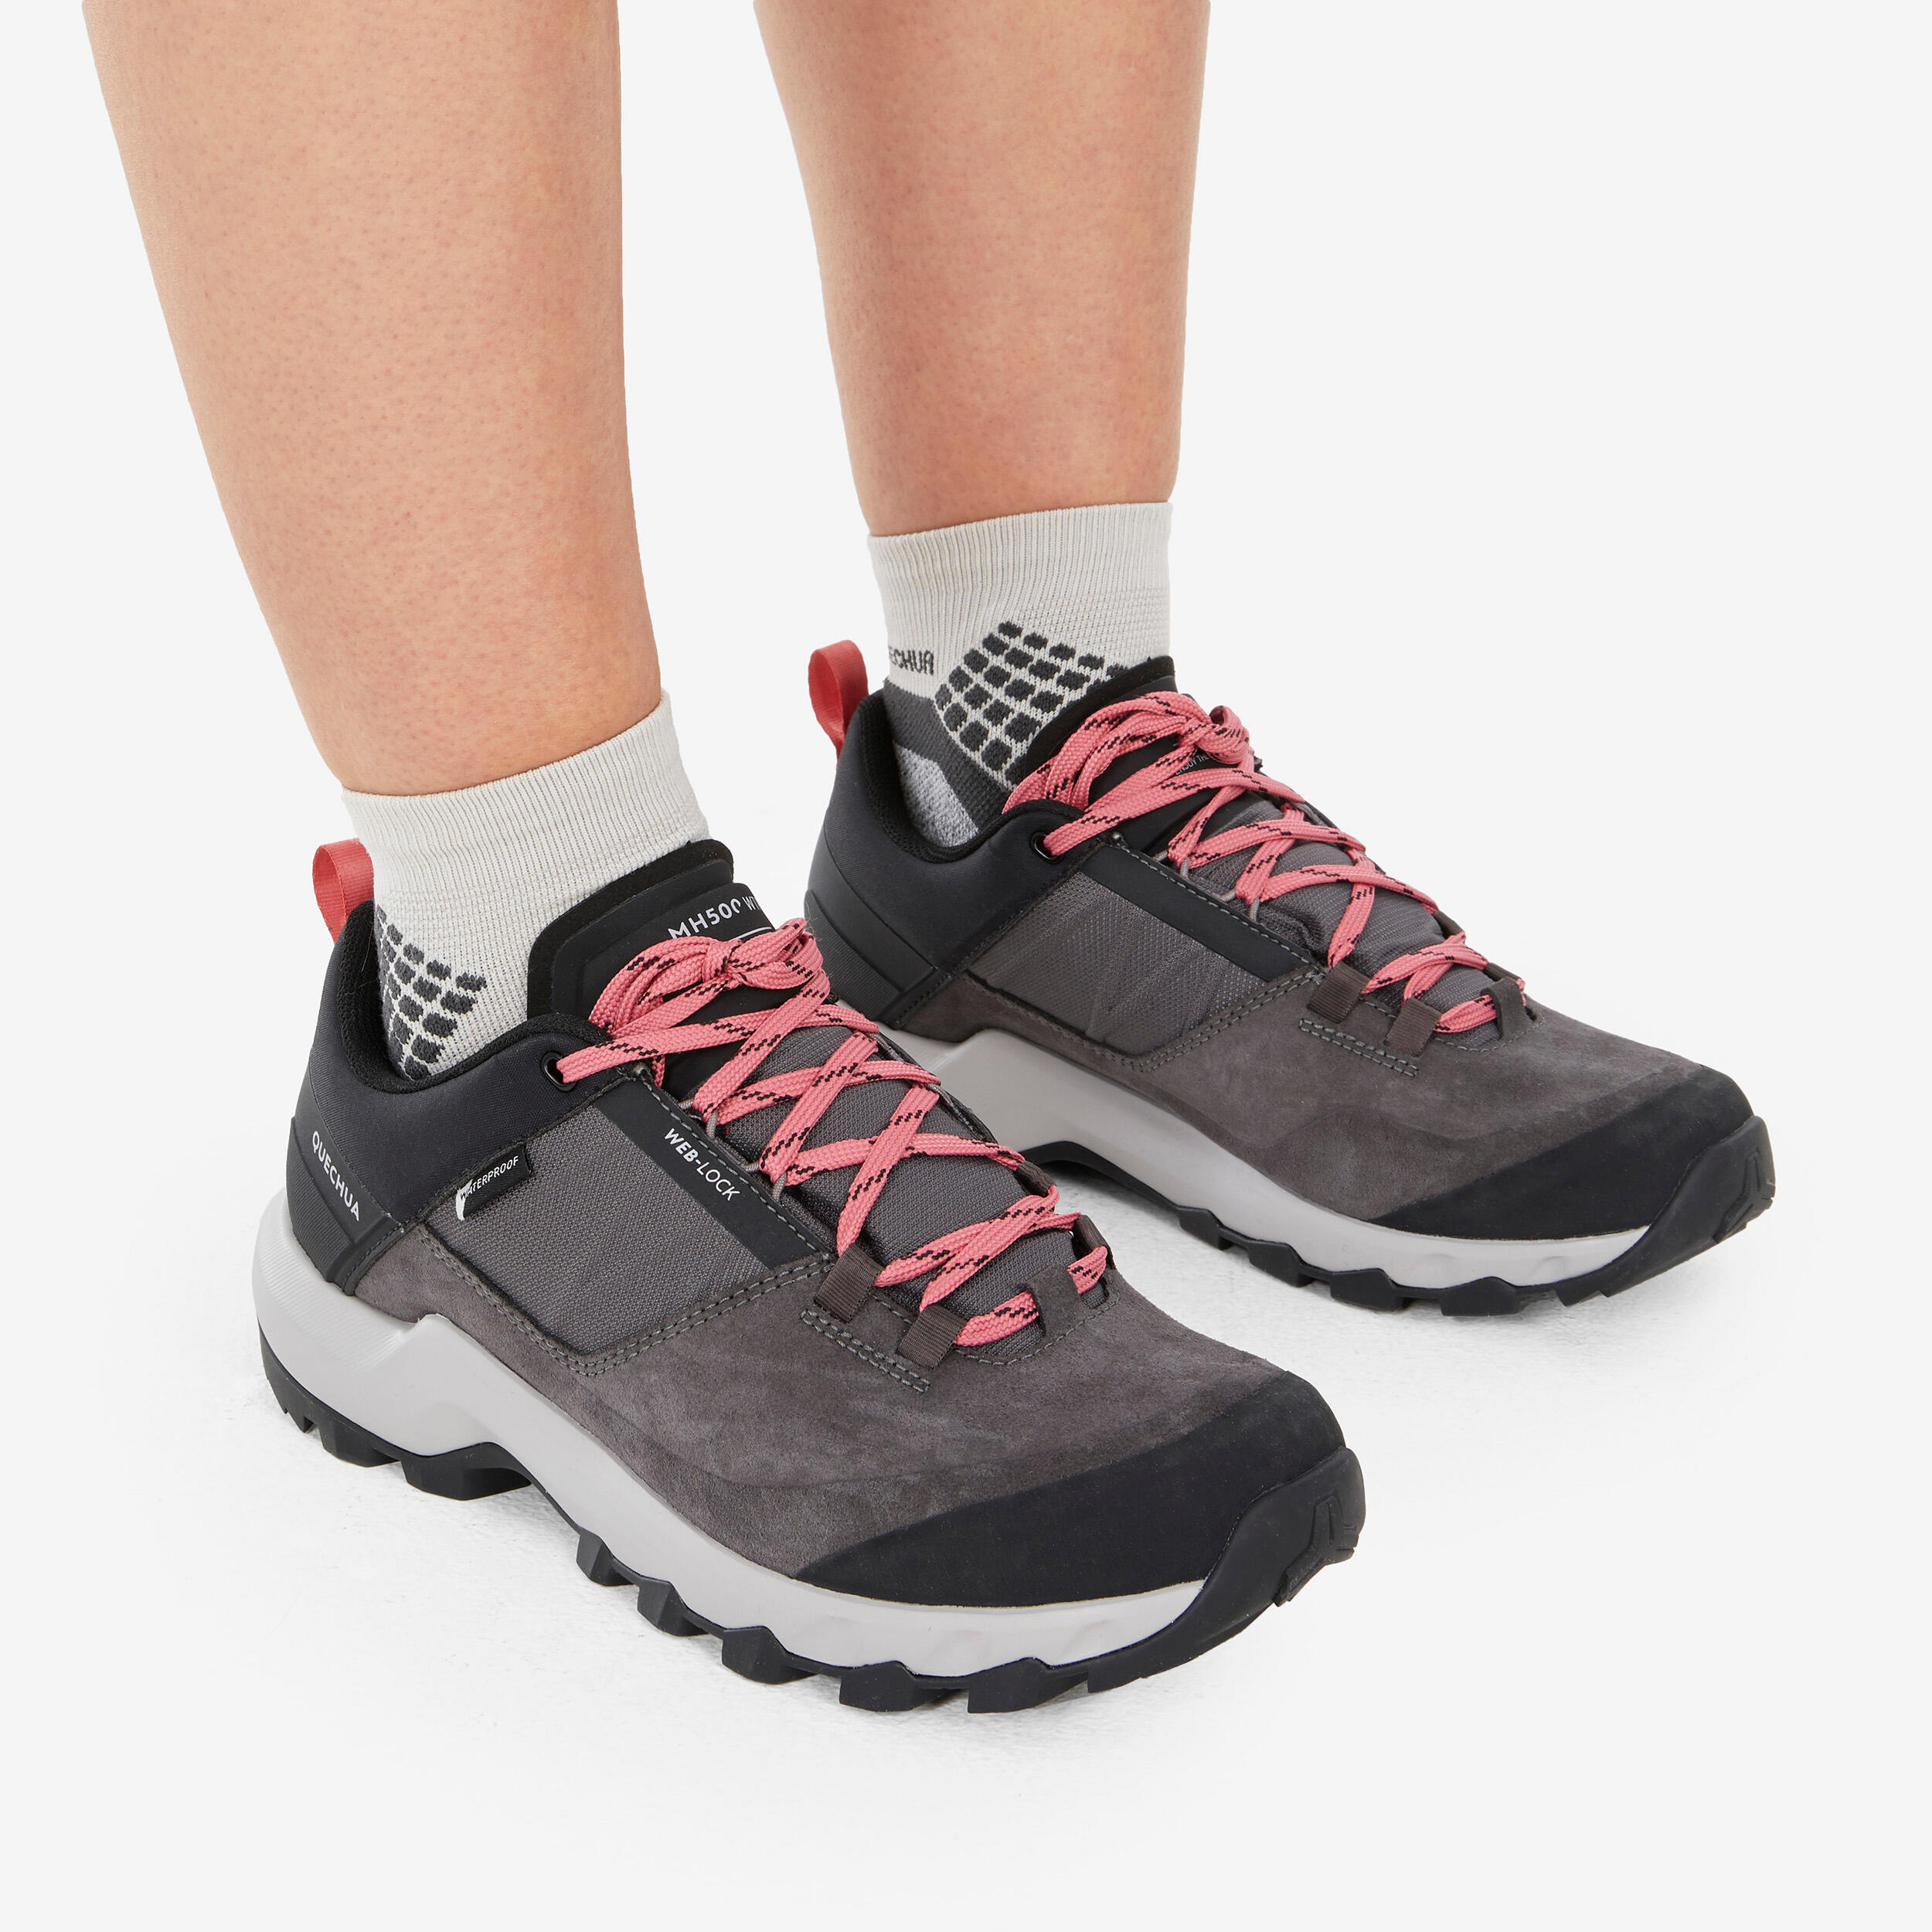 Women's waterproof mountain walking shoes - MH500 Grey 3/8